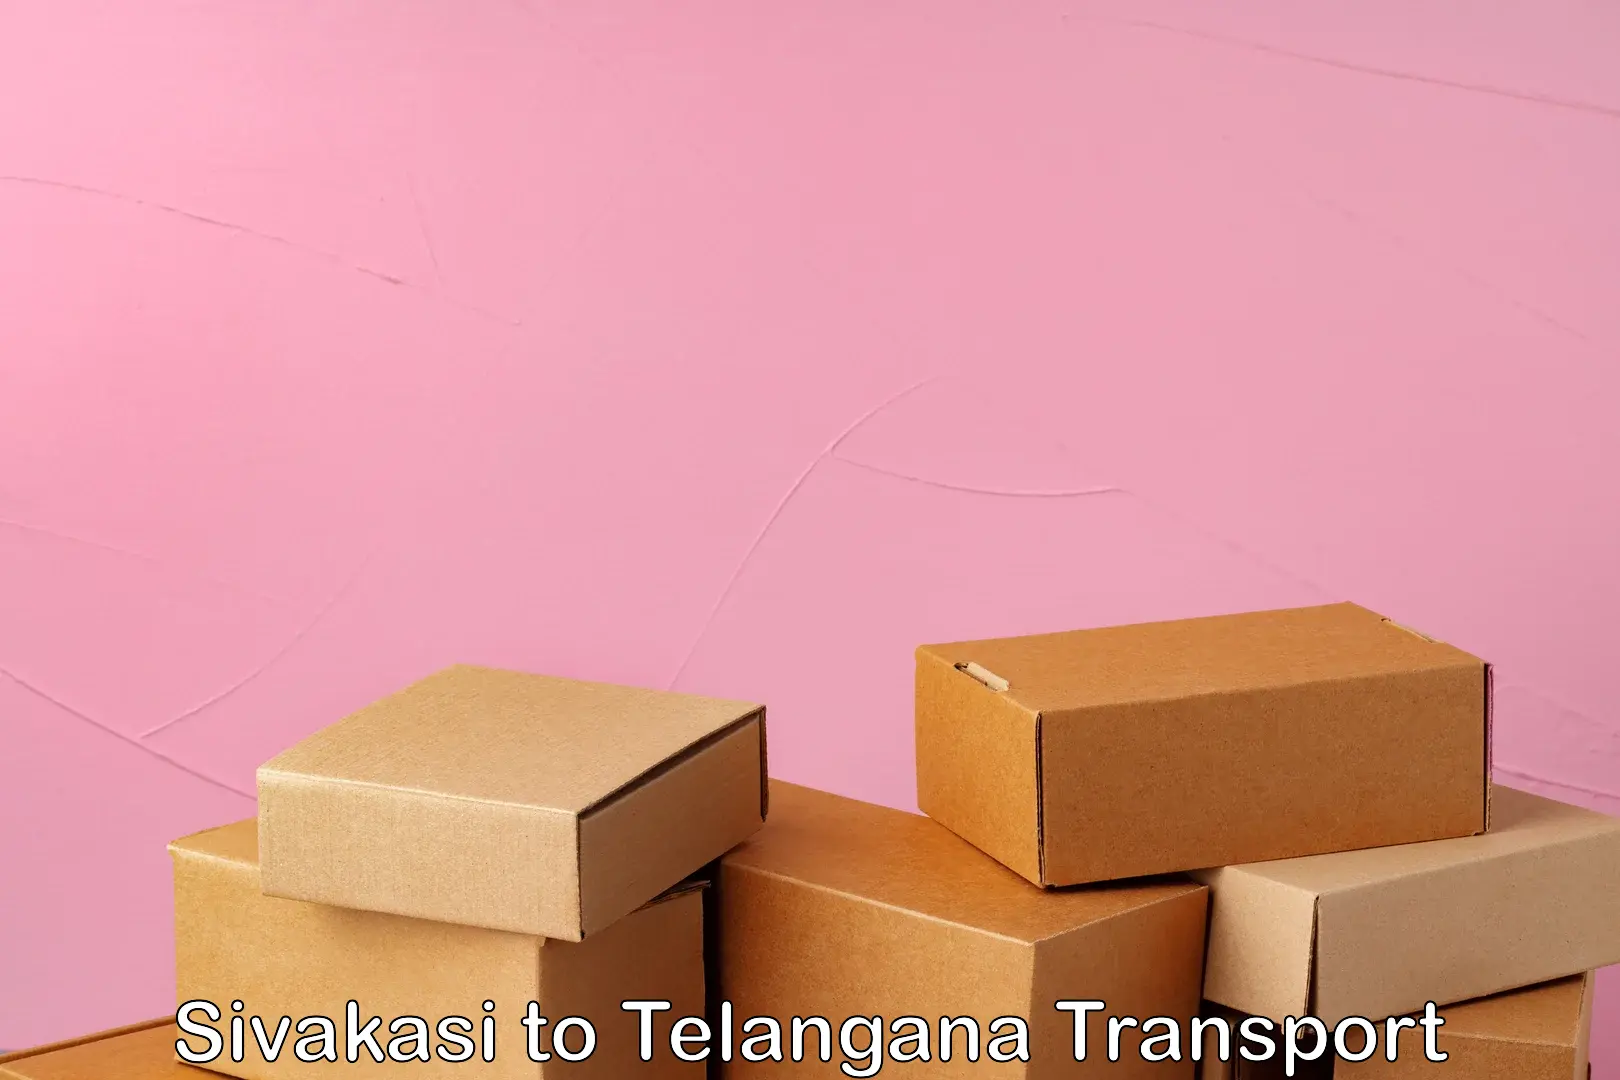 Air freight transport services Sivakasi to Telangana